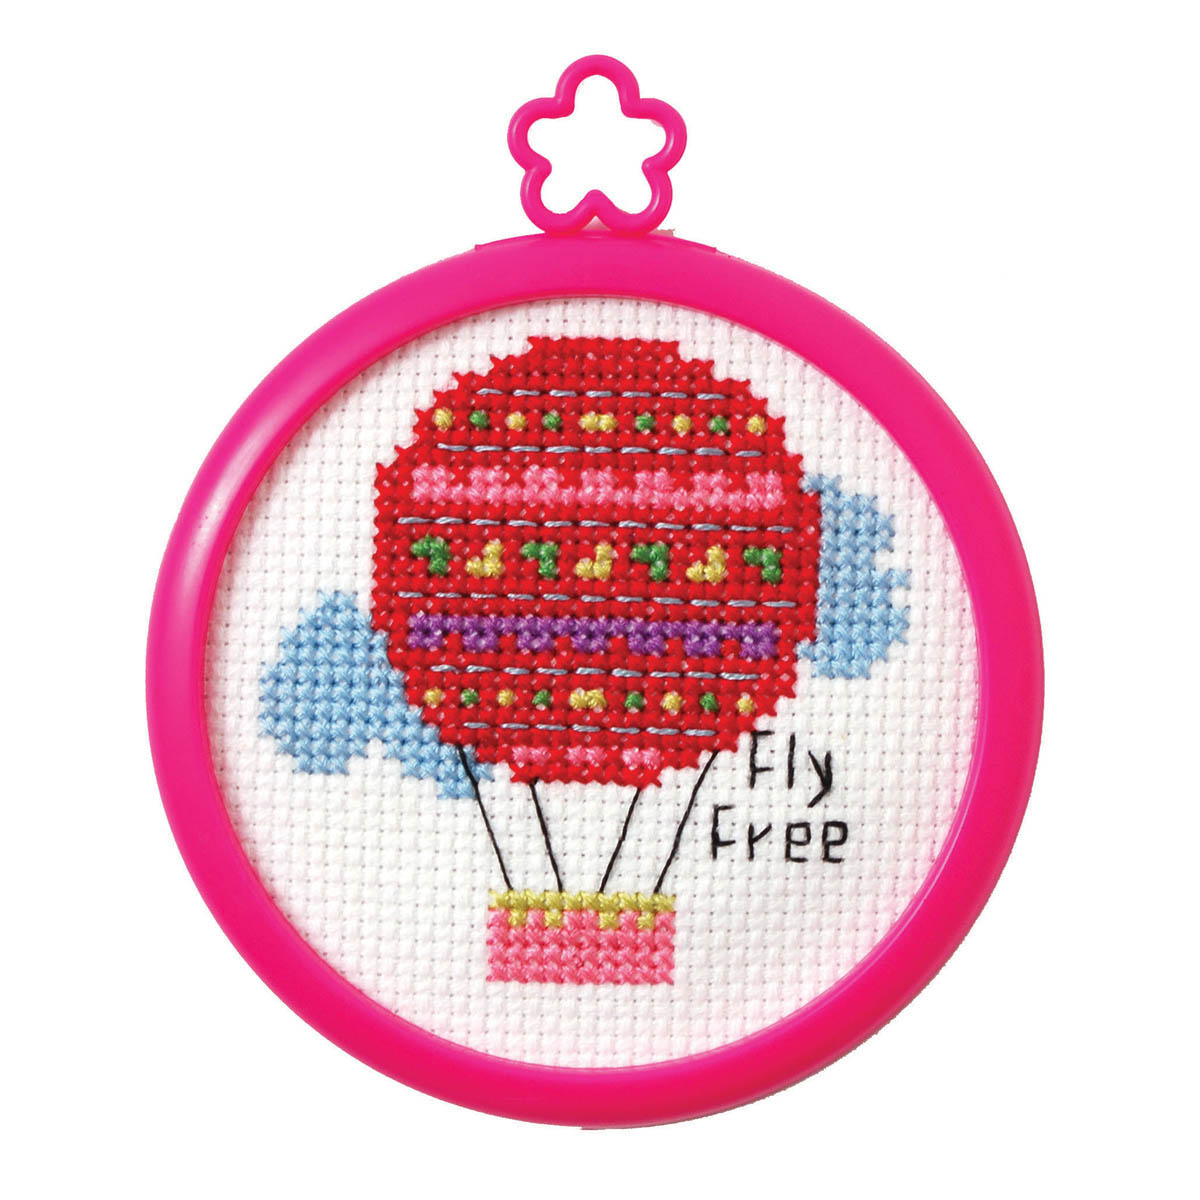 Bucilla ® My 1st Stitch™ - Counted Cross Stitch Kits - Mini - Fly Free - 45760